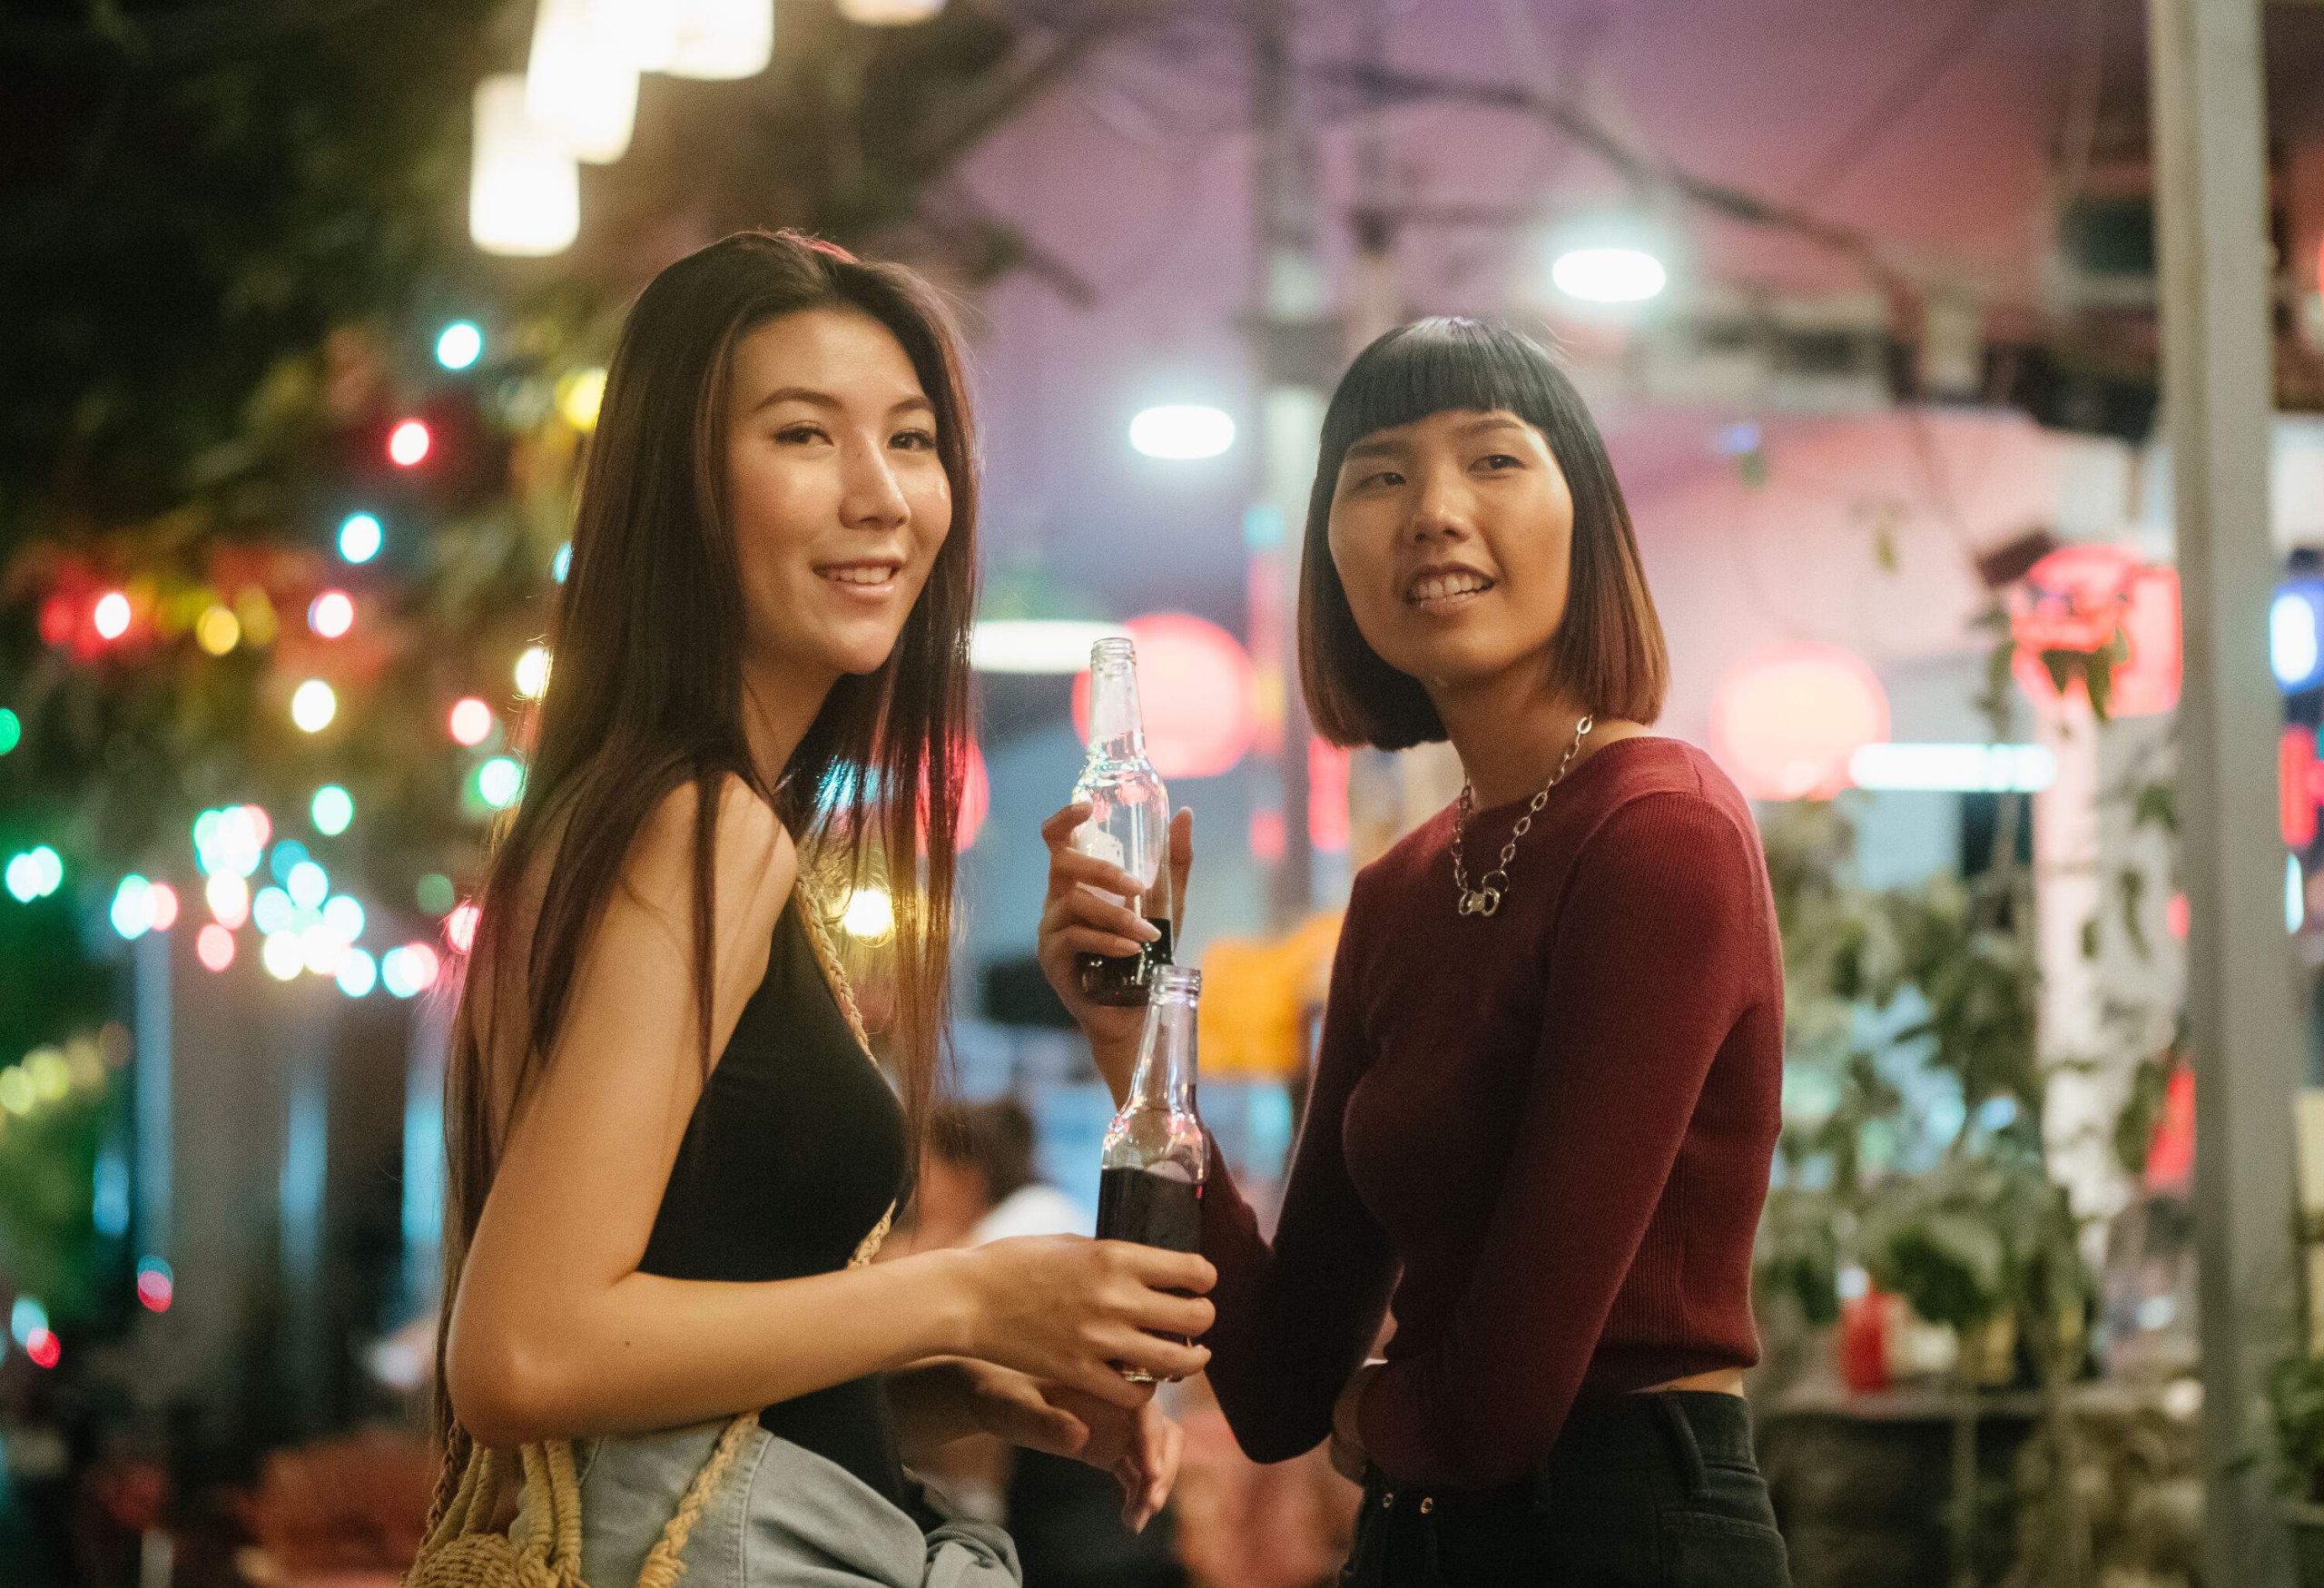 Two female friends enjoying a drink in a night market.